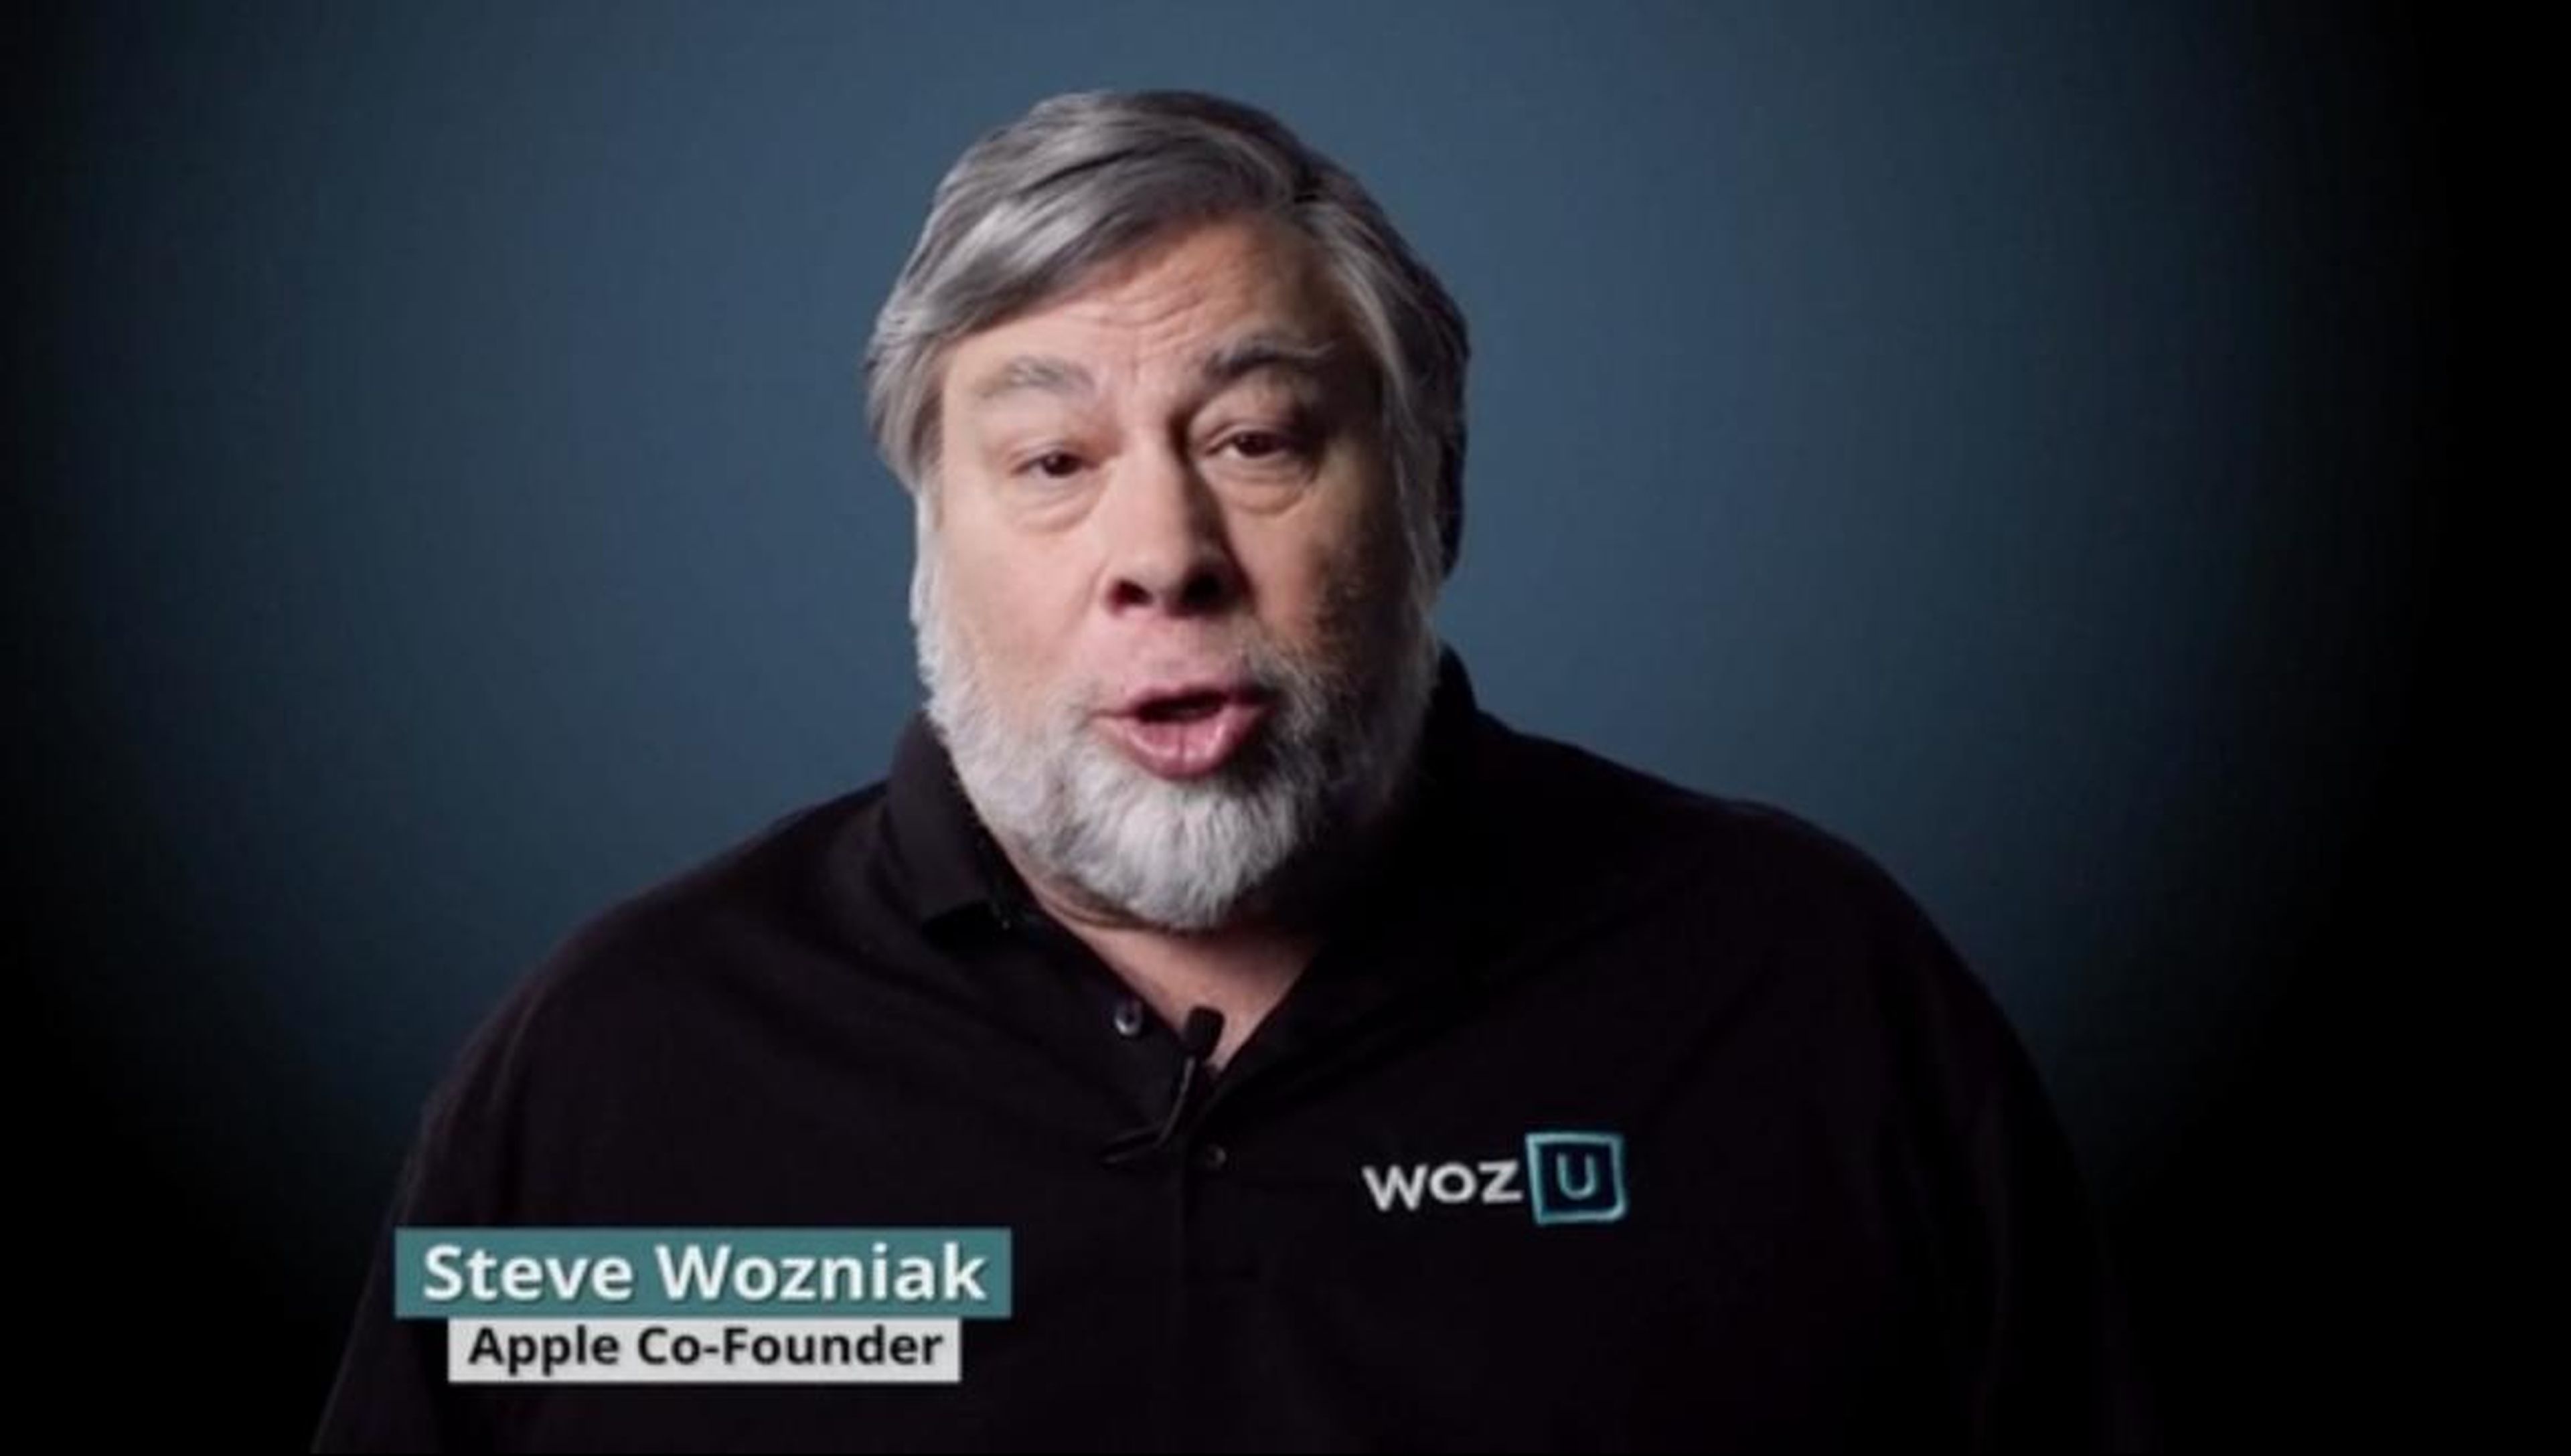 El desastroso 'bootcamp' de programación de Steve Wozniak de 13.200 dólares que utiliza enlaces a Wikipedia, según algunos de sus exalumnos